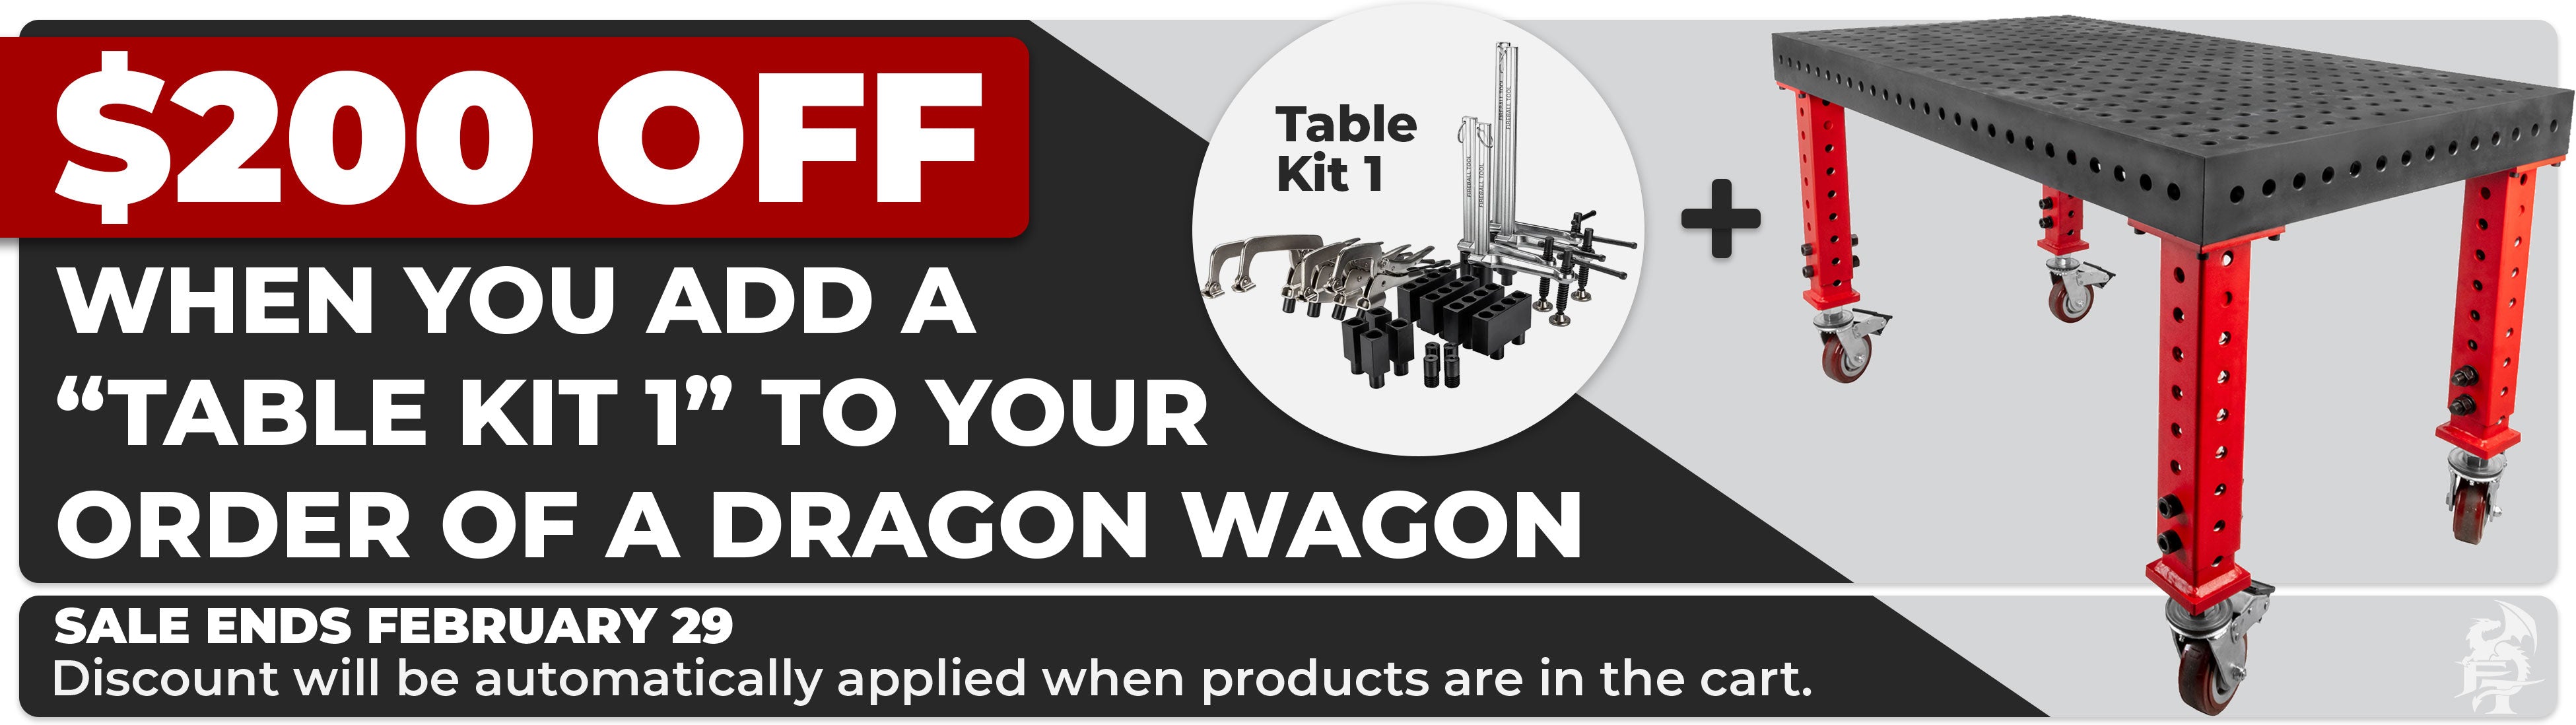 Dragon Wagon + kit Sale